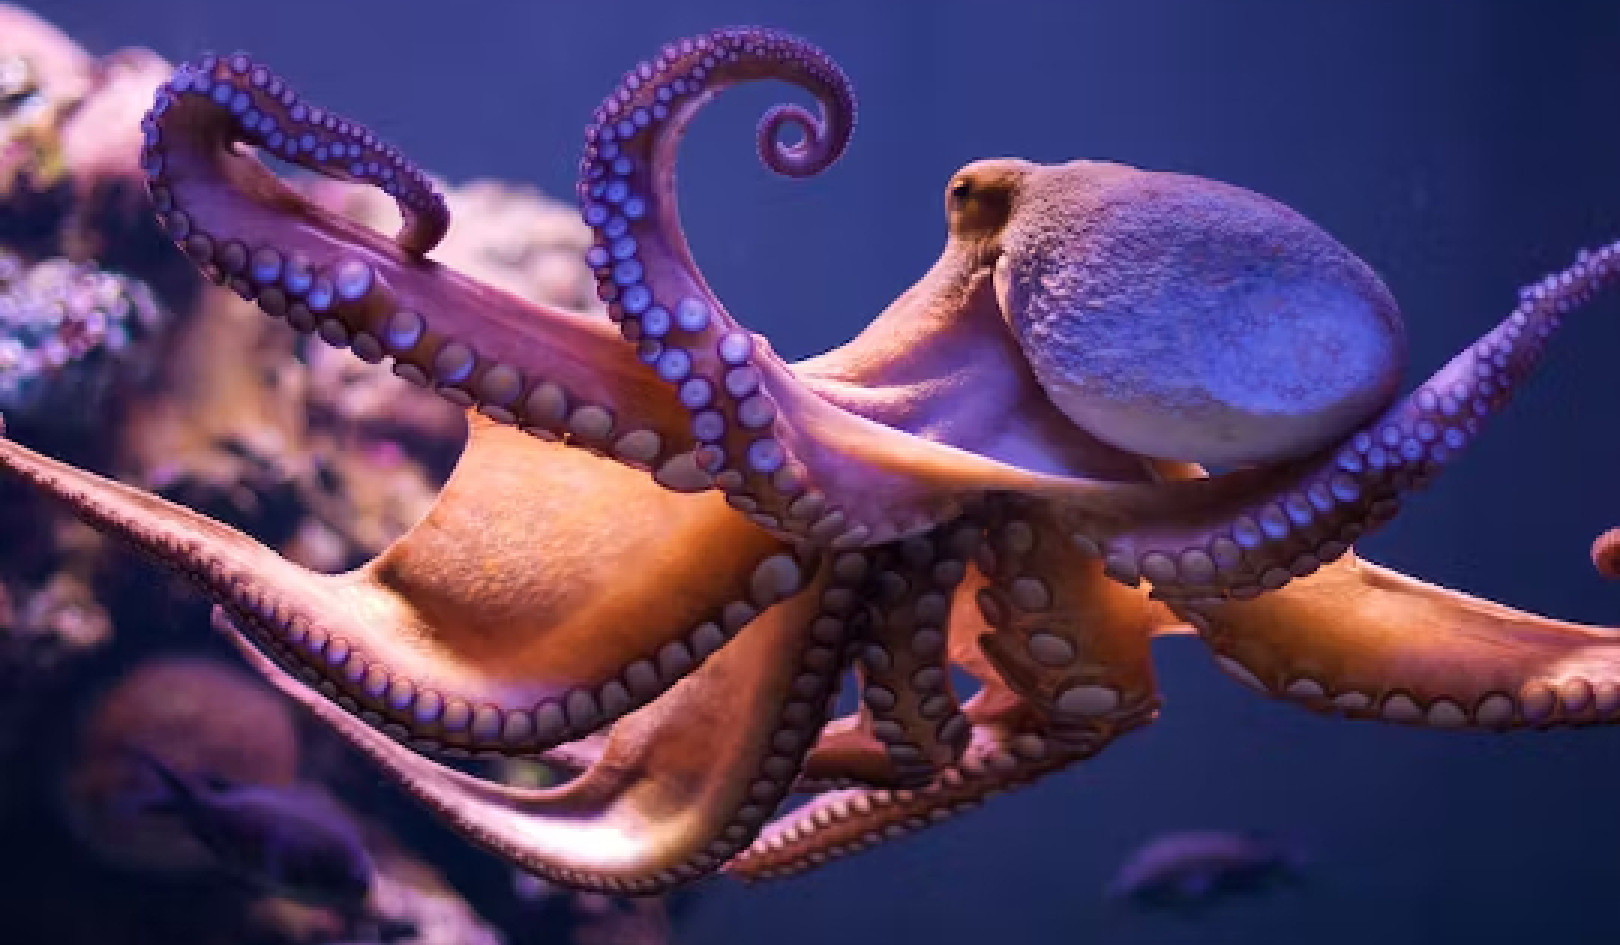 Suckers for Learning: Bakit Napakatalino ng mga Octopus